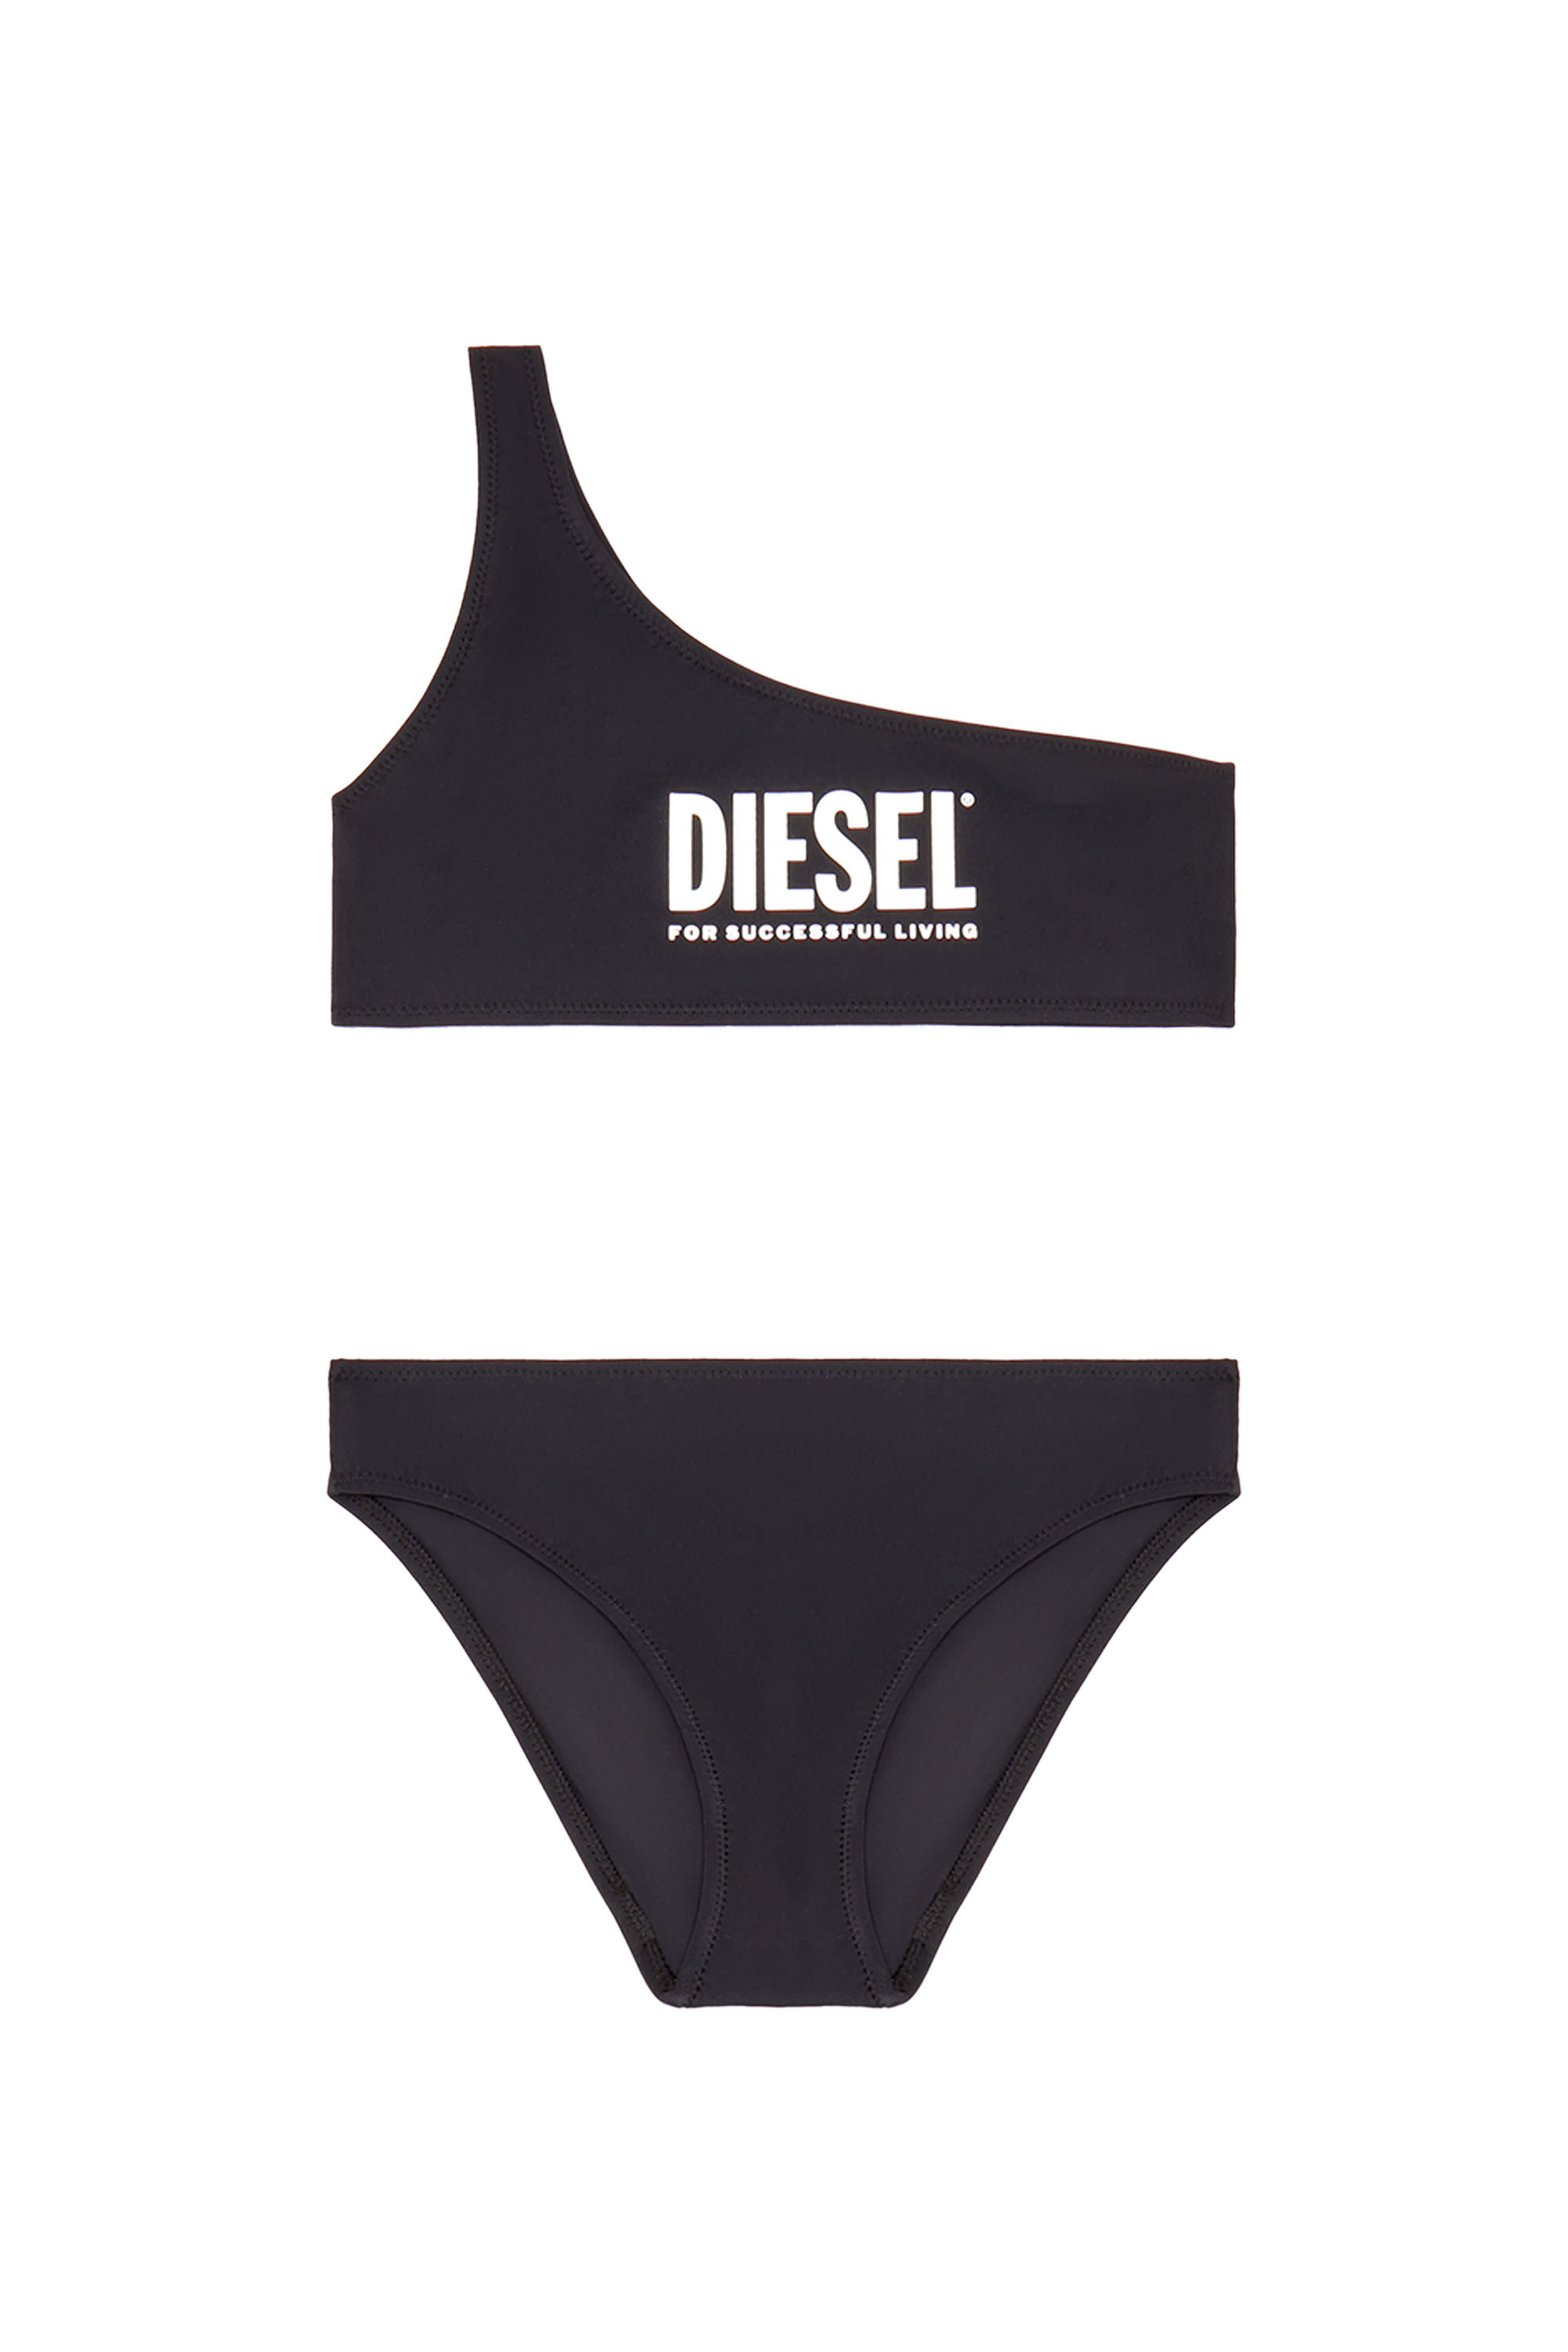 Diesel - MHOLDER, Black - Image 1